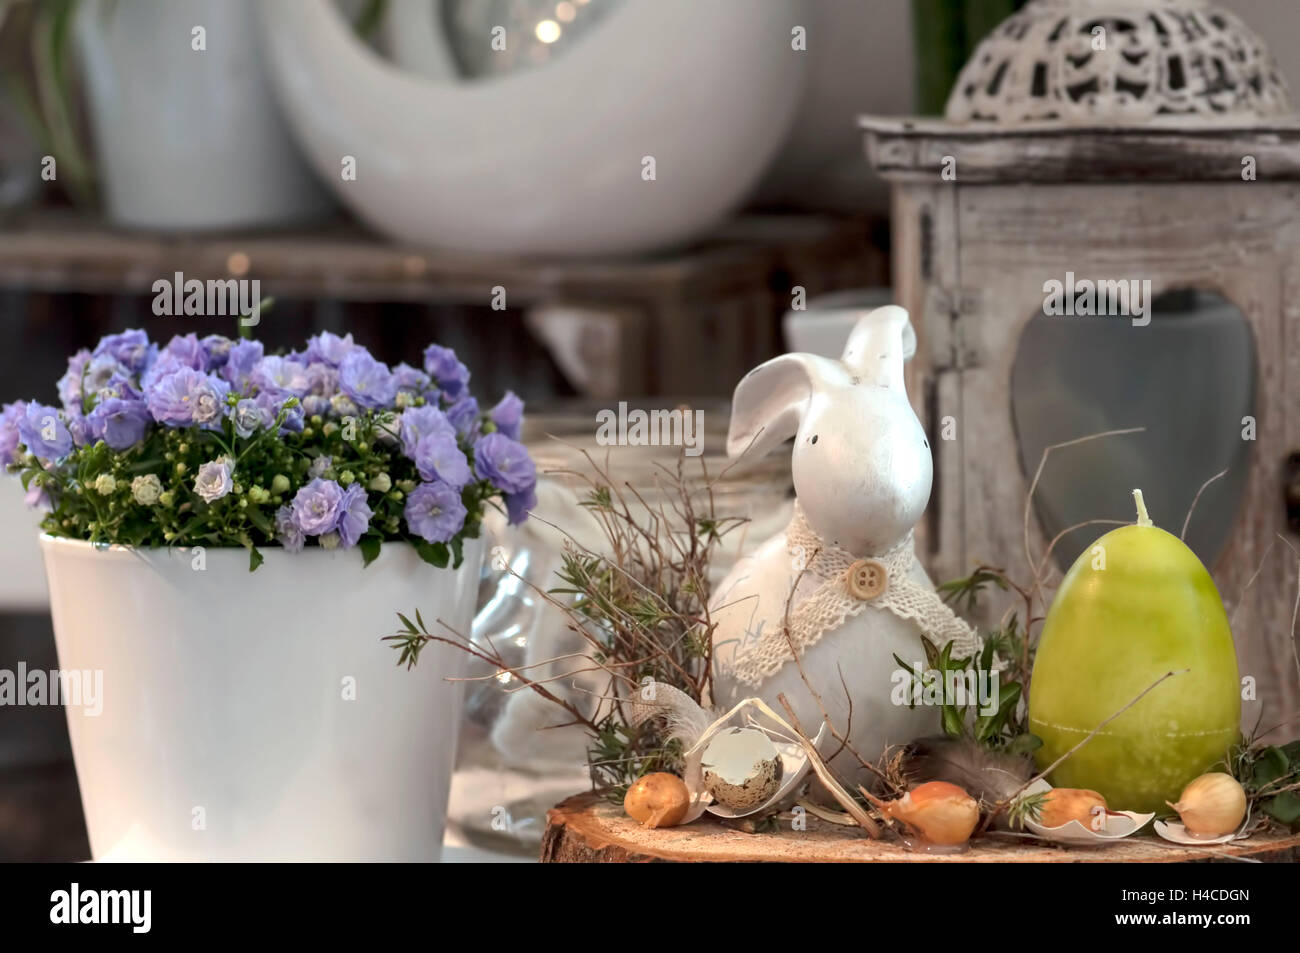 Decorazione di pasqua nel negozio di fiori. Vaso con mauve campanule, una lanterna  di vecchi dalle intemperie in legno. In primo piano di terracotta piccoli  coniglietto di Pasqua, verde uovo di pasqua